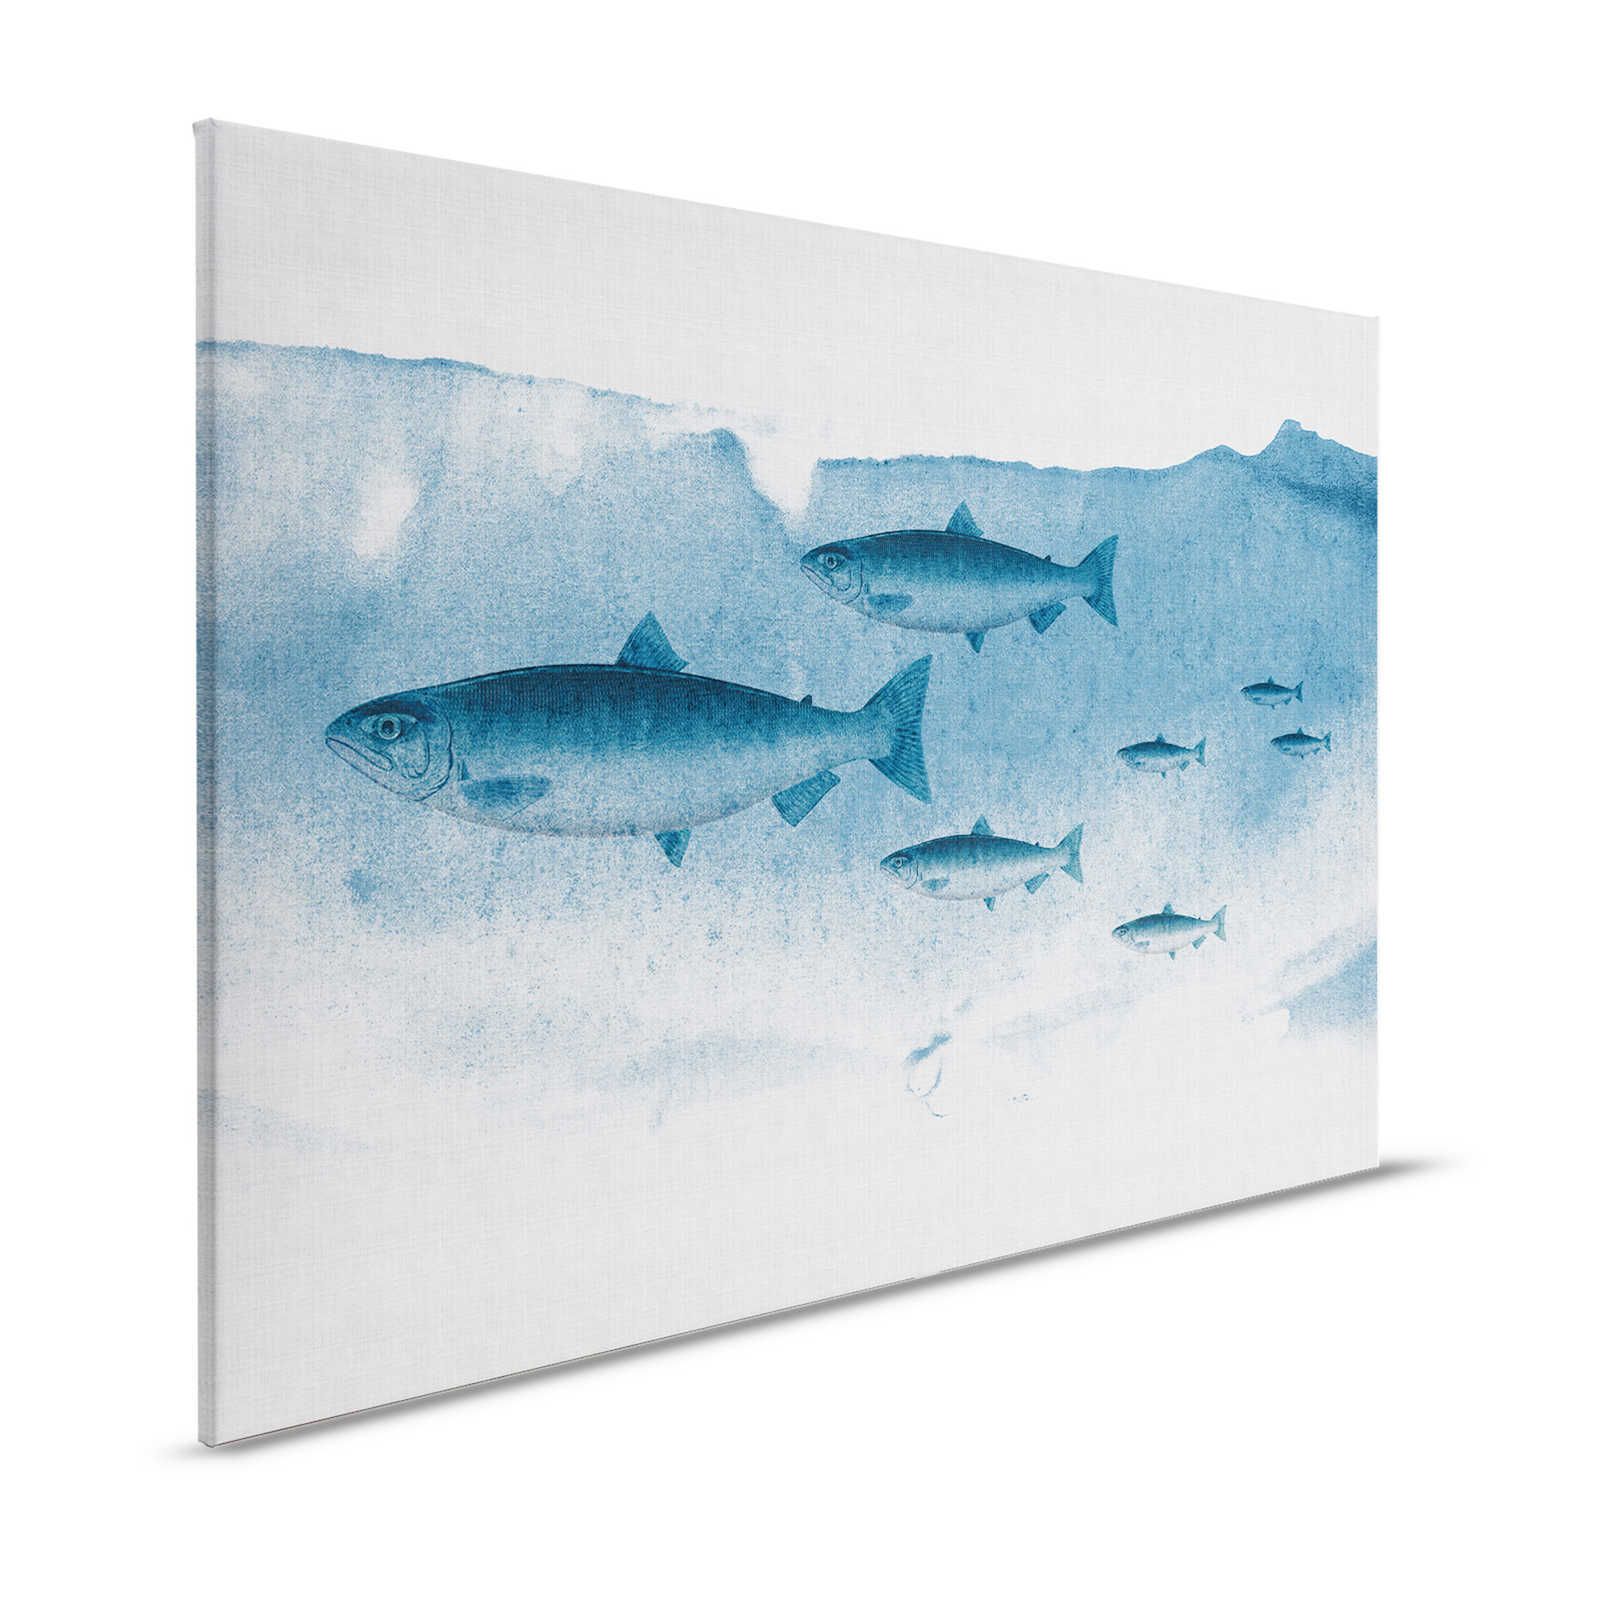 Into the blue 1 - Aquarelle de poisson en bleu comme toile de lin naturelle - 1,20 m x 0,80 m
